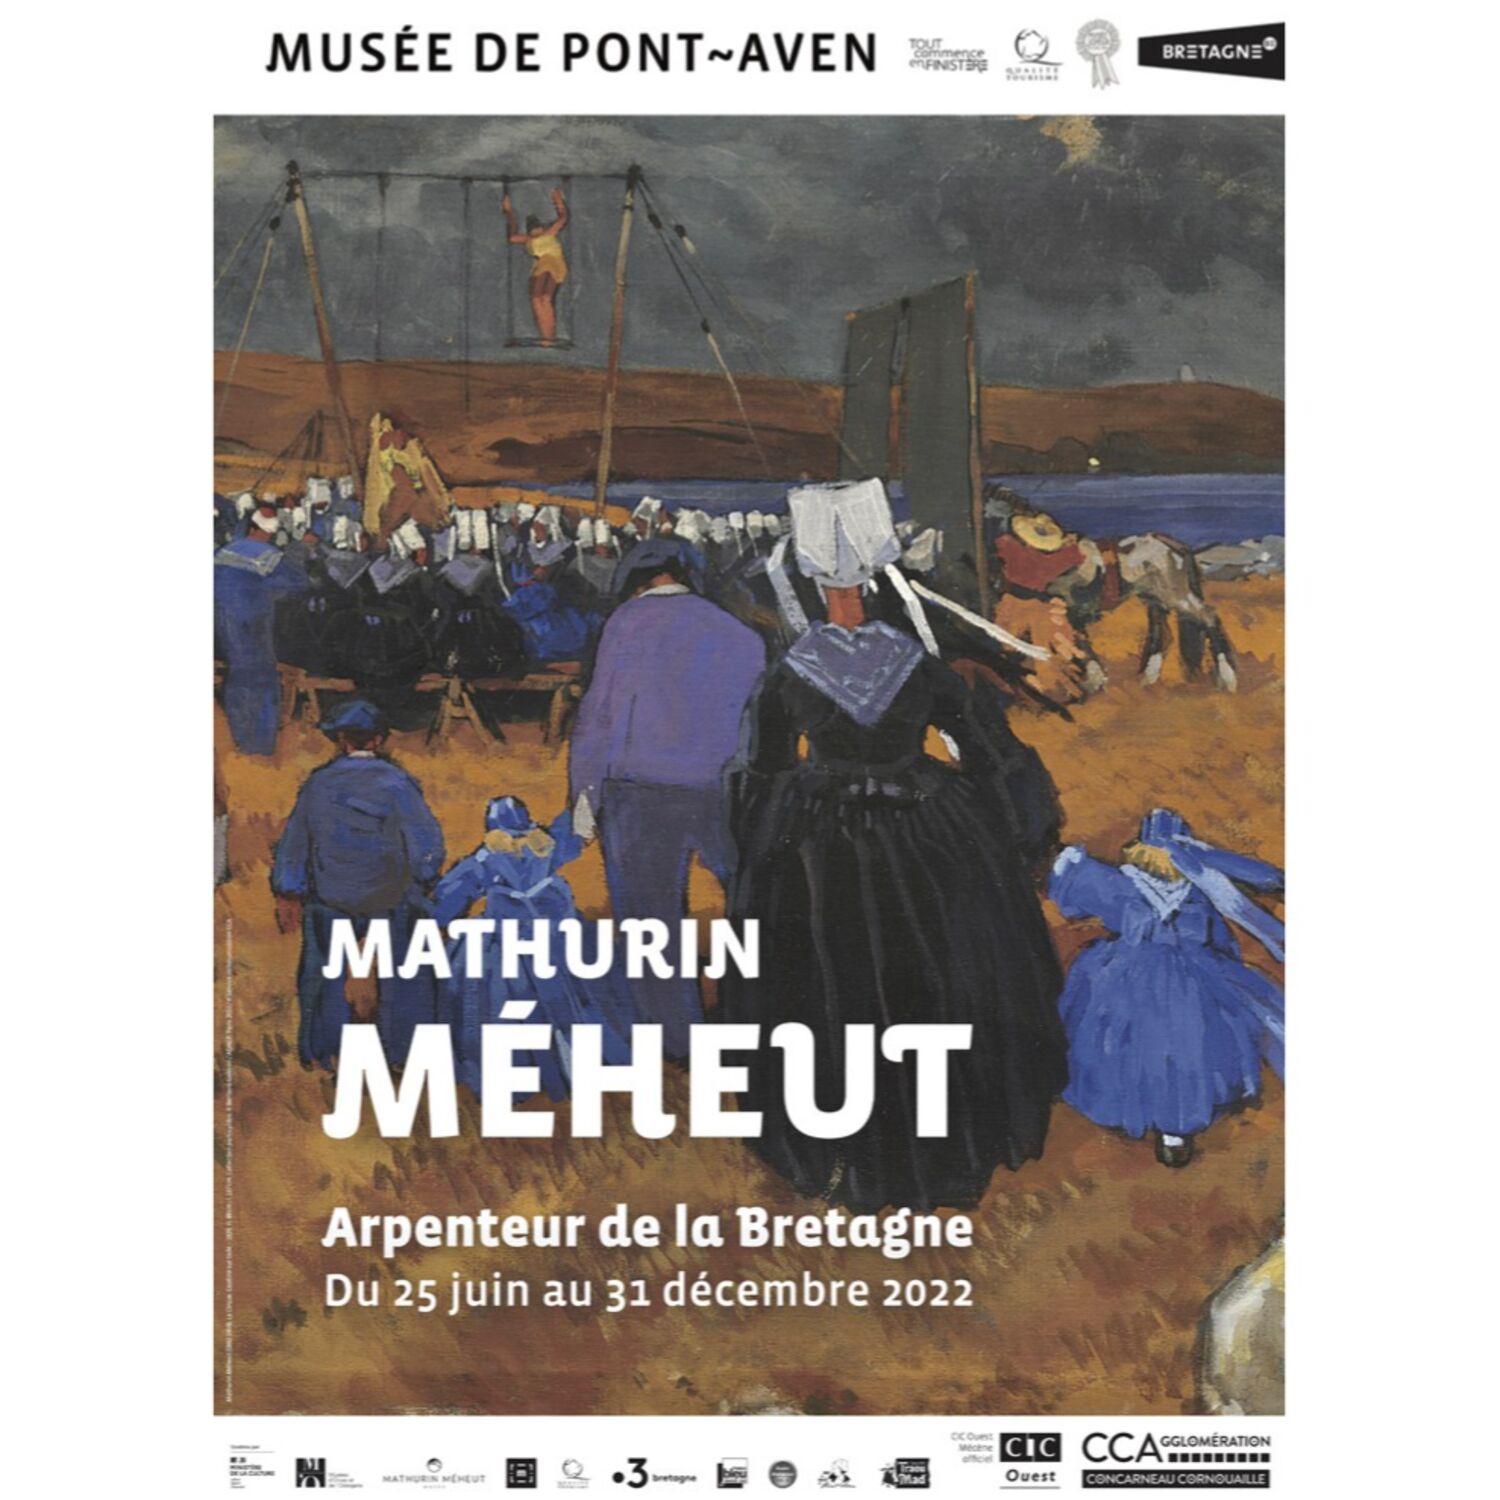 Mathurin Méheut, arpenteur de la Bretagne : nouvelle exposition temporaire au Musée de Pont-Aven